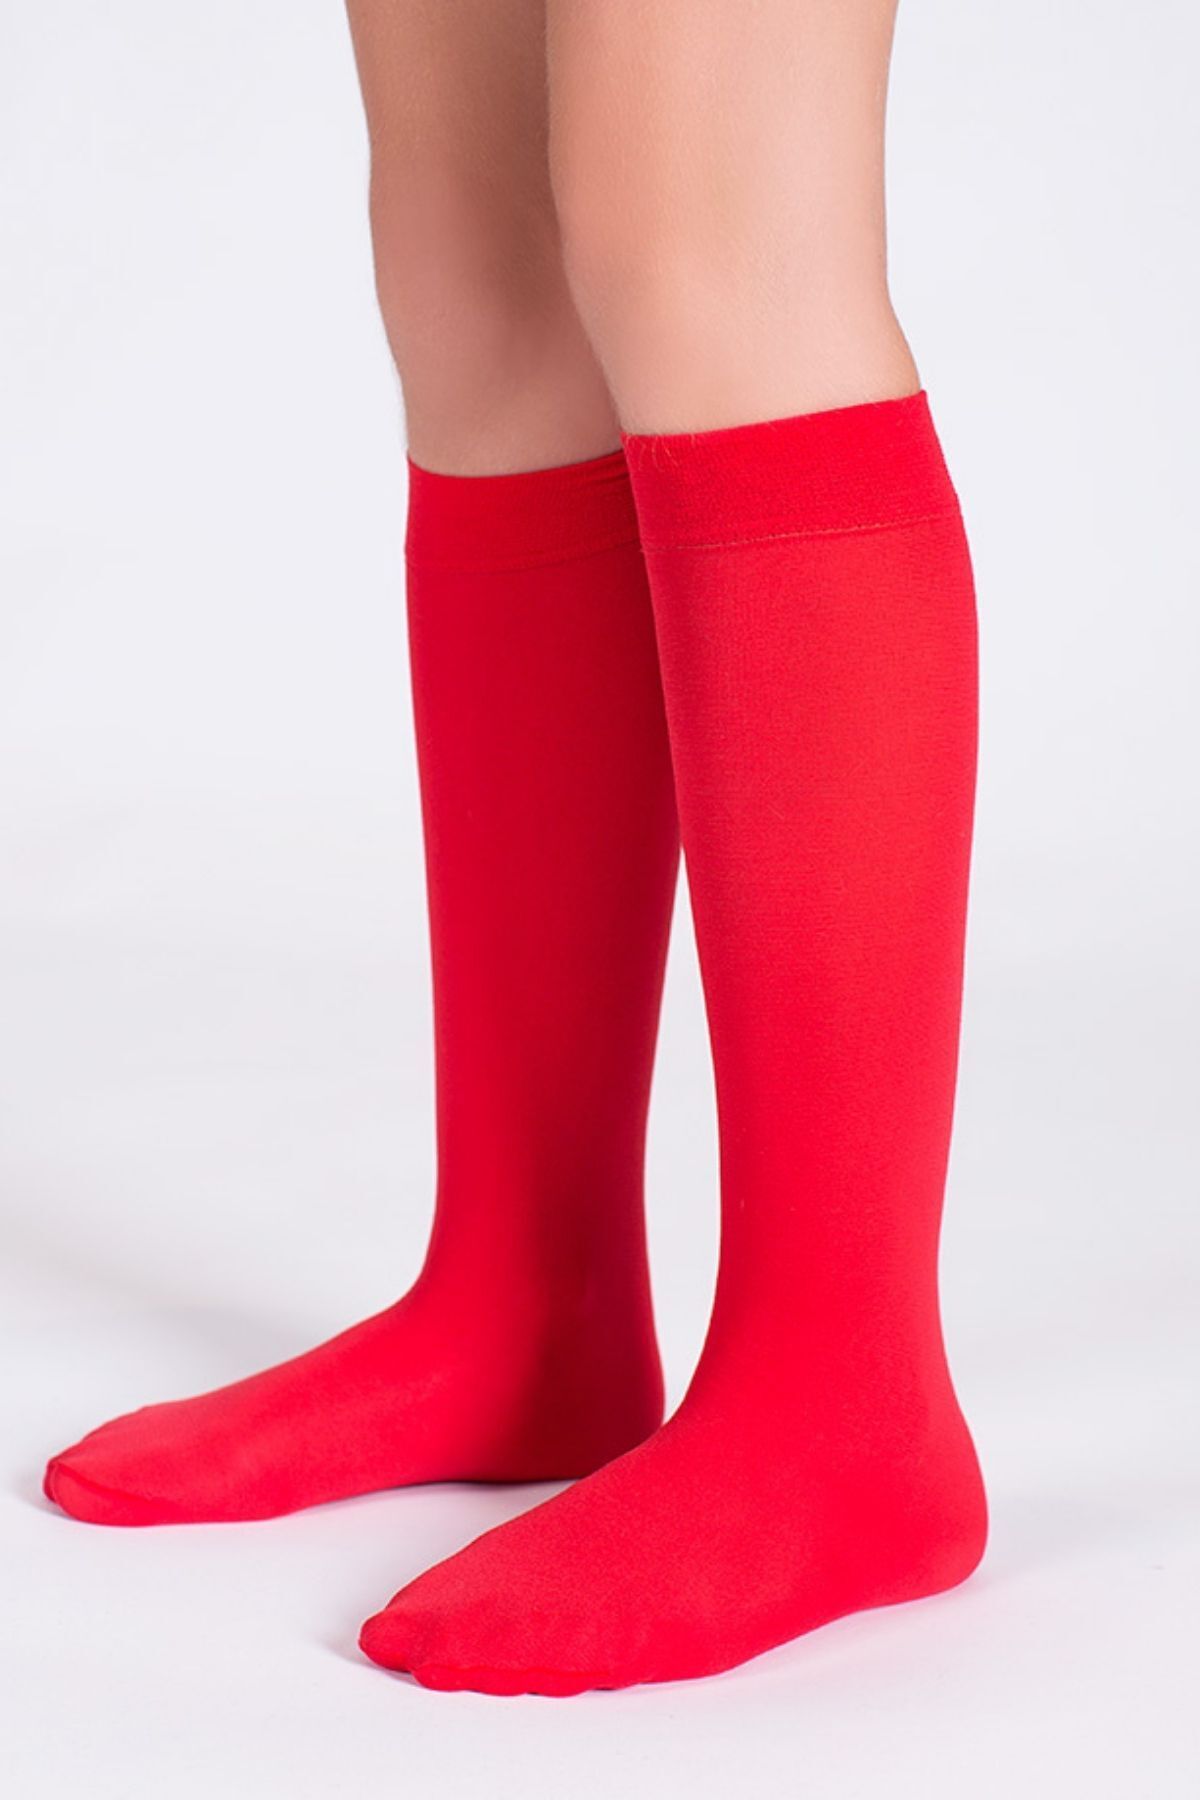 Goose Diz Altı Kırmızı Kız Çocuk Çorap